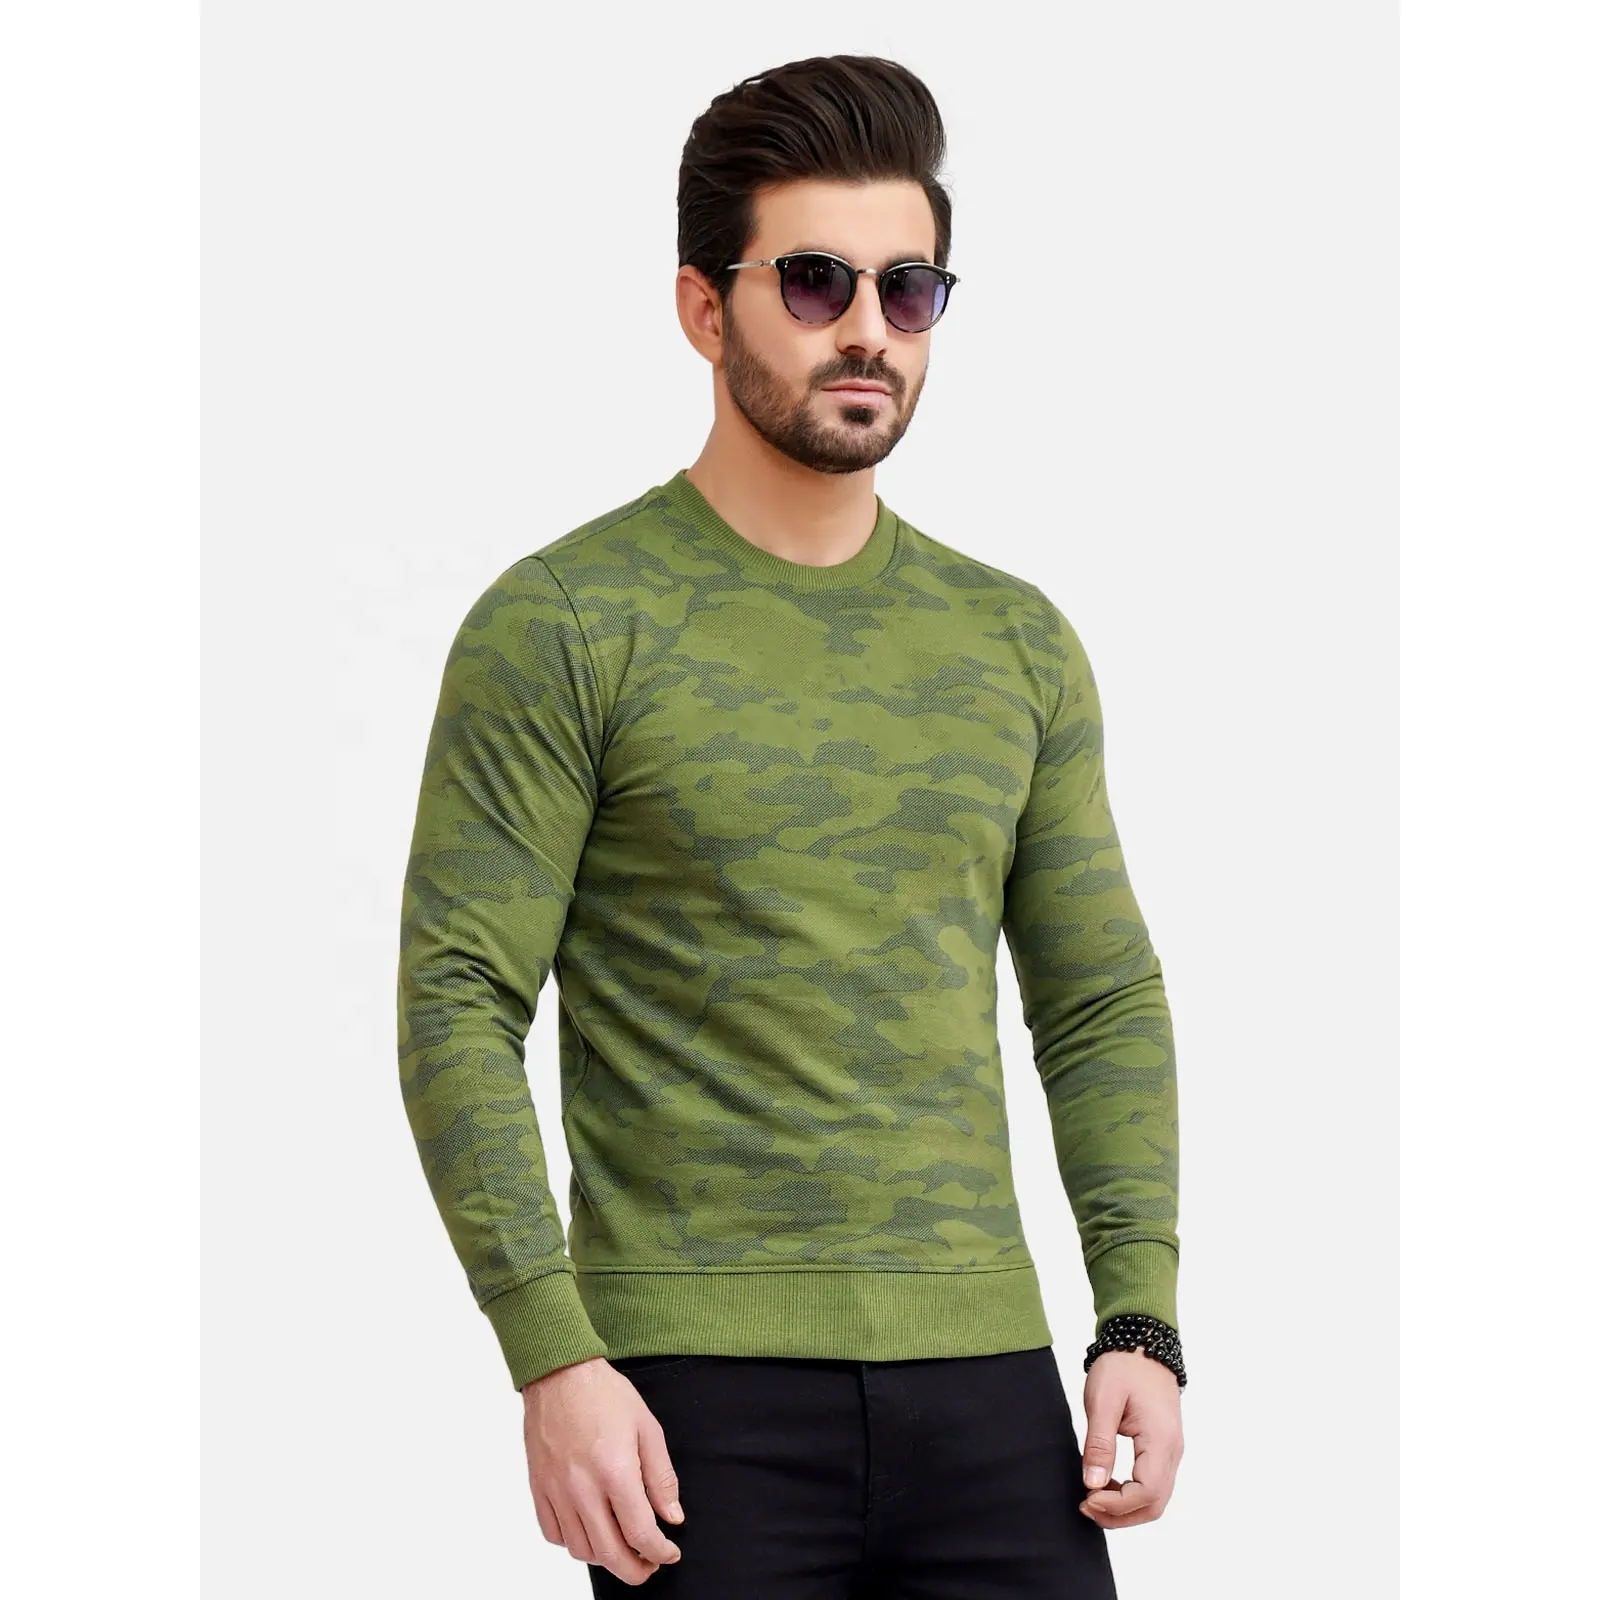 Neuestes Design Sweat Shirt Farbwahl Baumwolle Custom Herren Sweat Shirt Großhandel Hochwertige Overs ize Pullover Rundhals ausschnitt sw